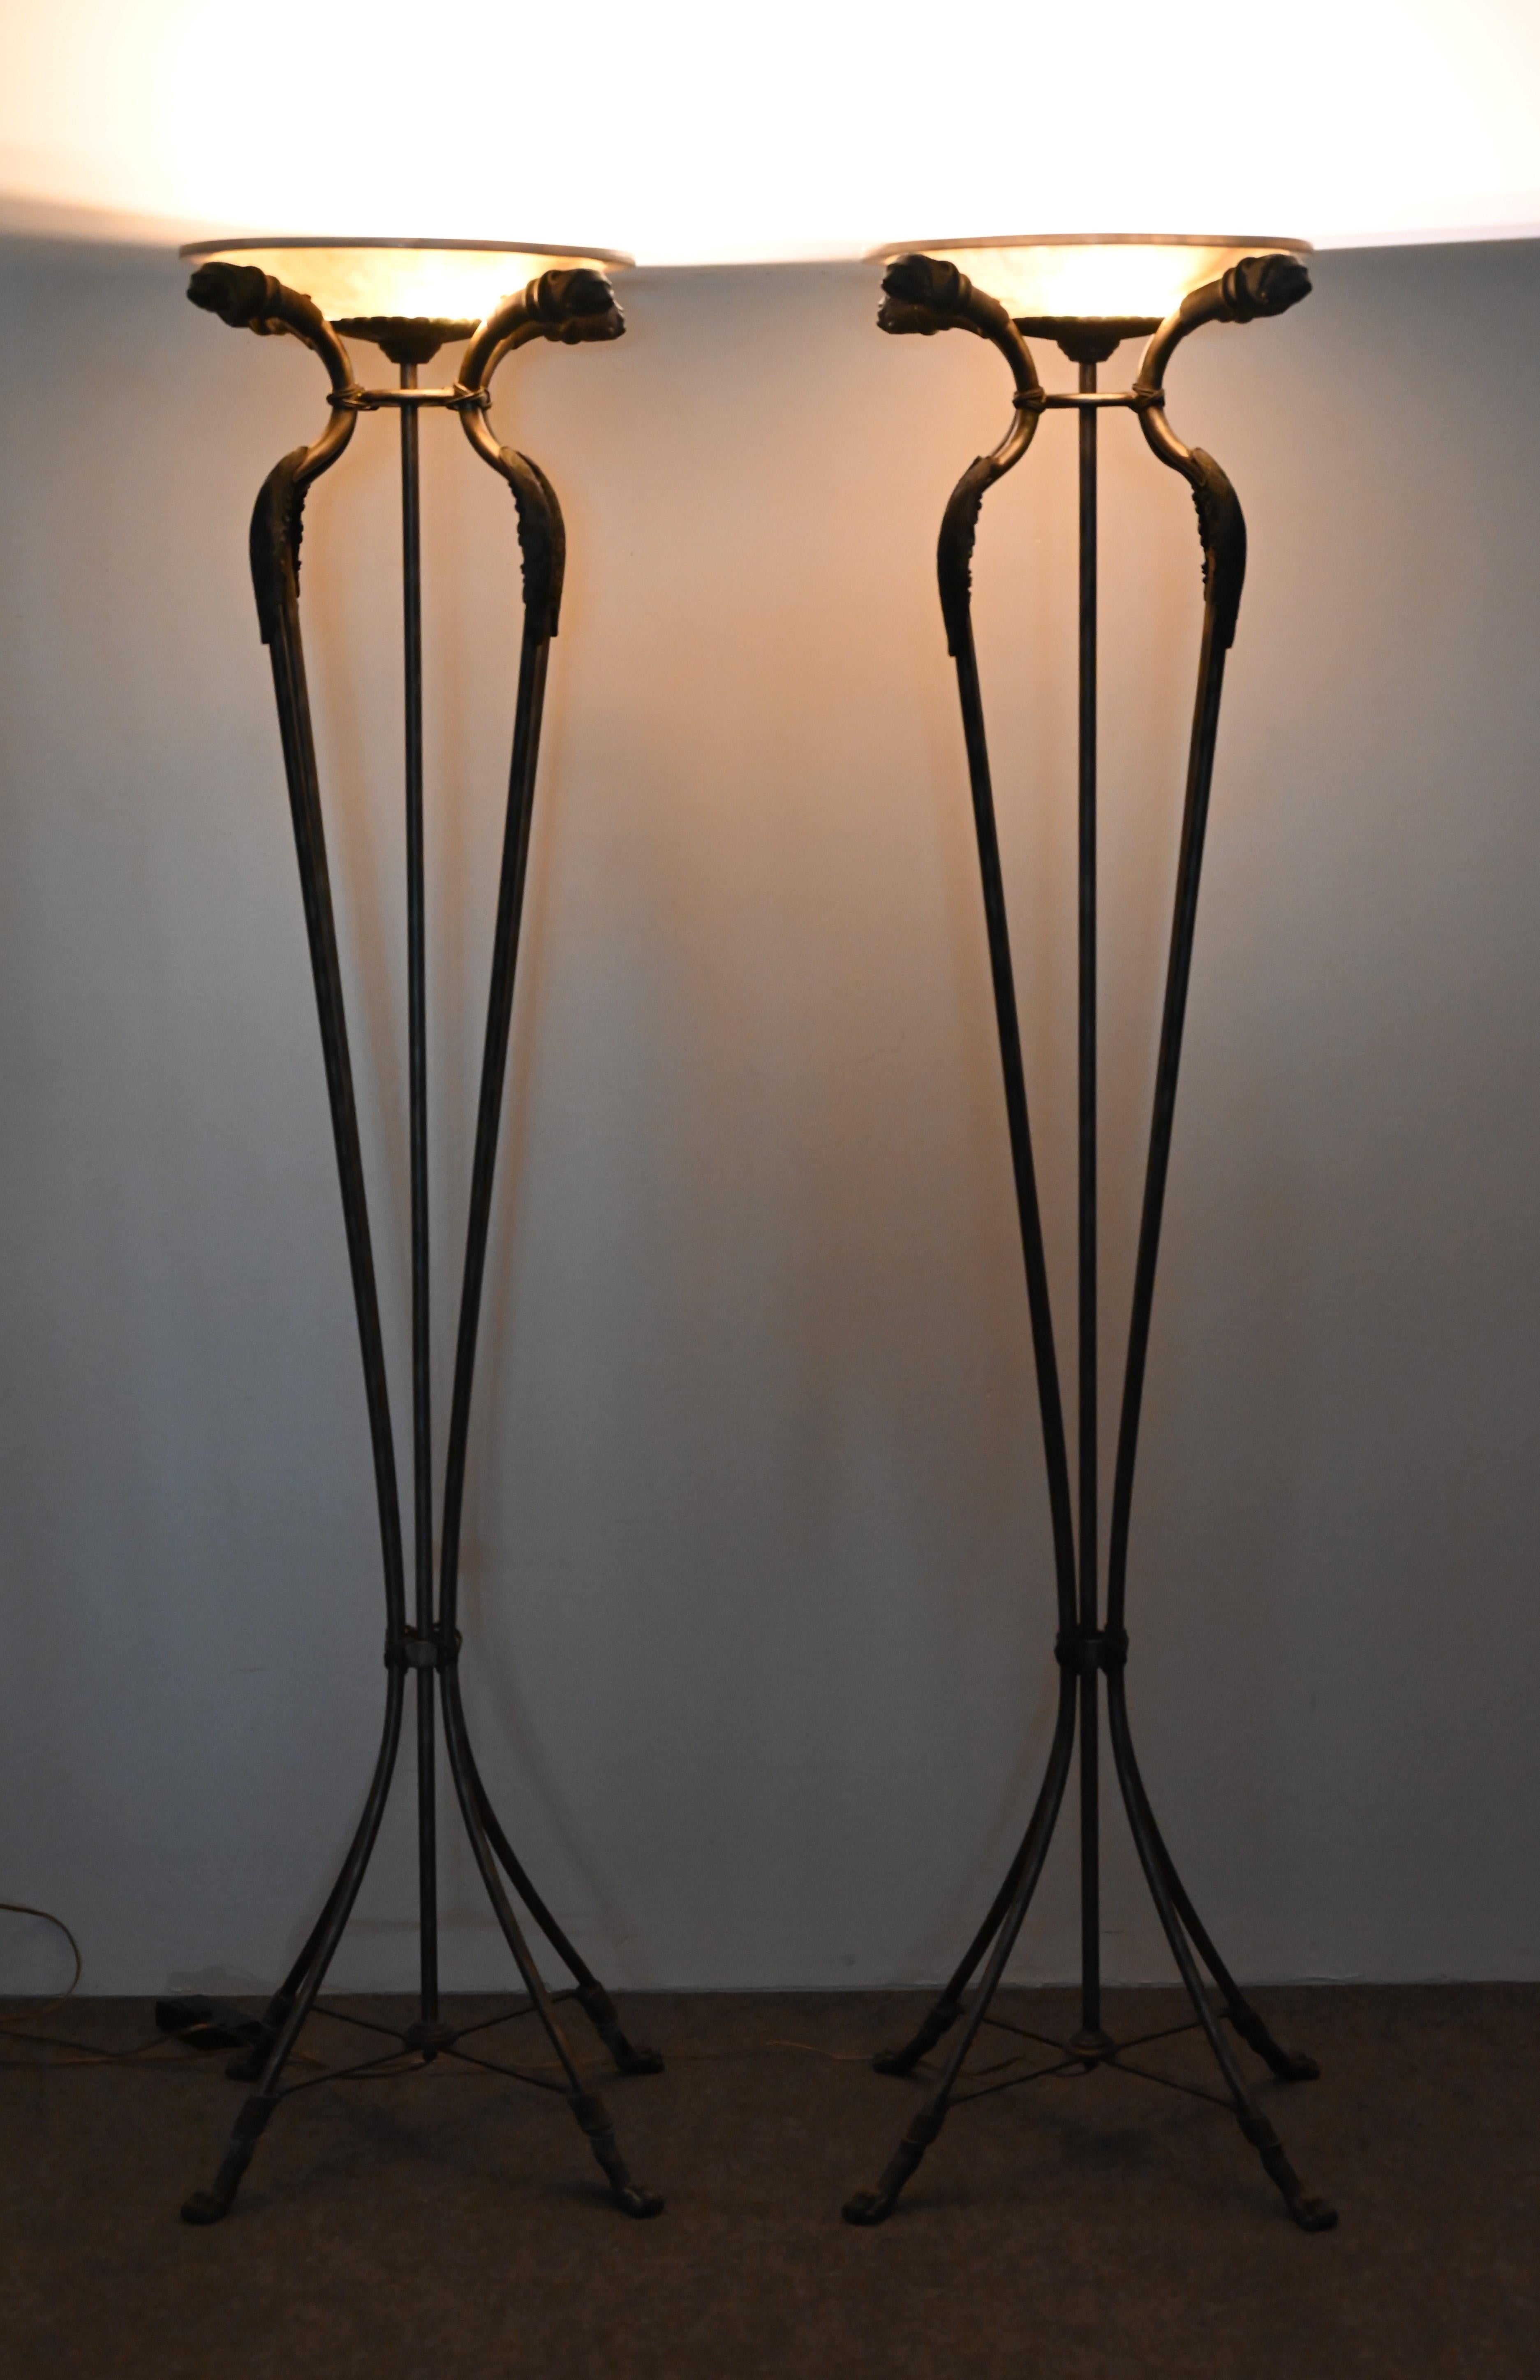 Ein wunderschönes Paar Fackeln aus Bronze und Stahl mit tessellierten Schirmen. Das Lampenpaar wird Maitland Smith zugeschrieben, ist aber nicht signiert. Dieses hübsche Paar Stehlampen passt gut zu Antiquitäten und Möbeln im klassizistischen oder